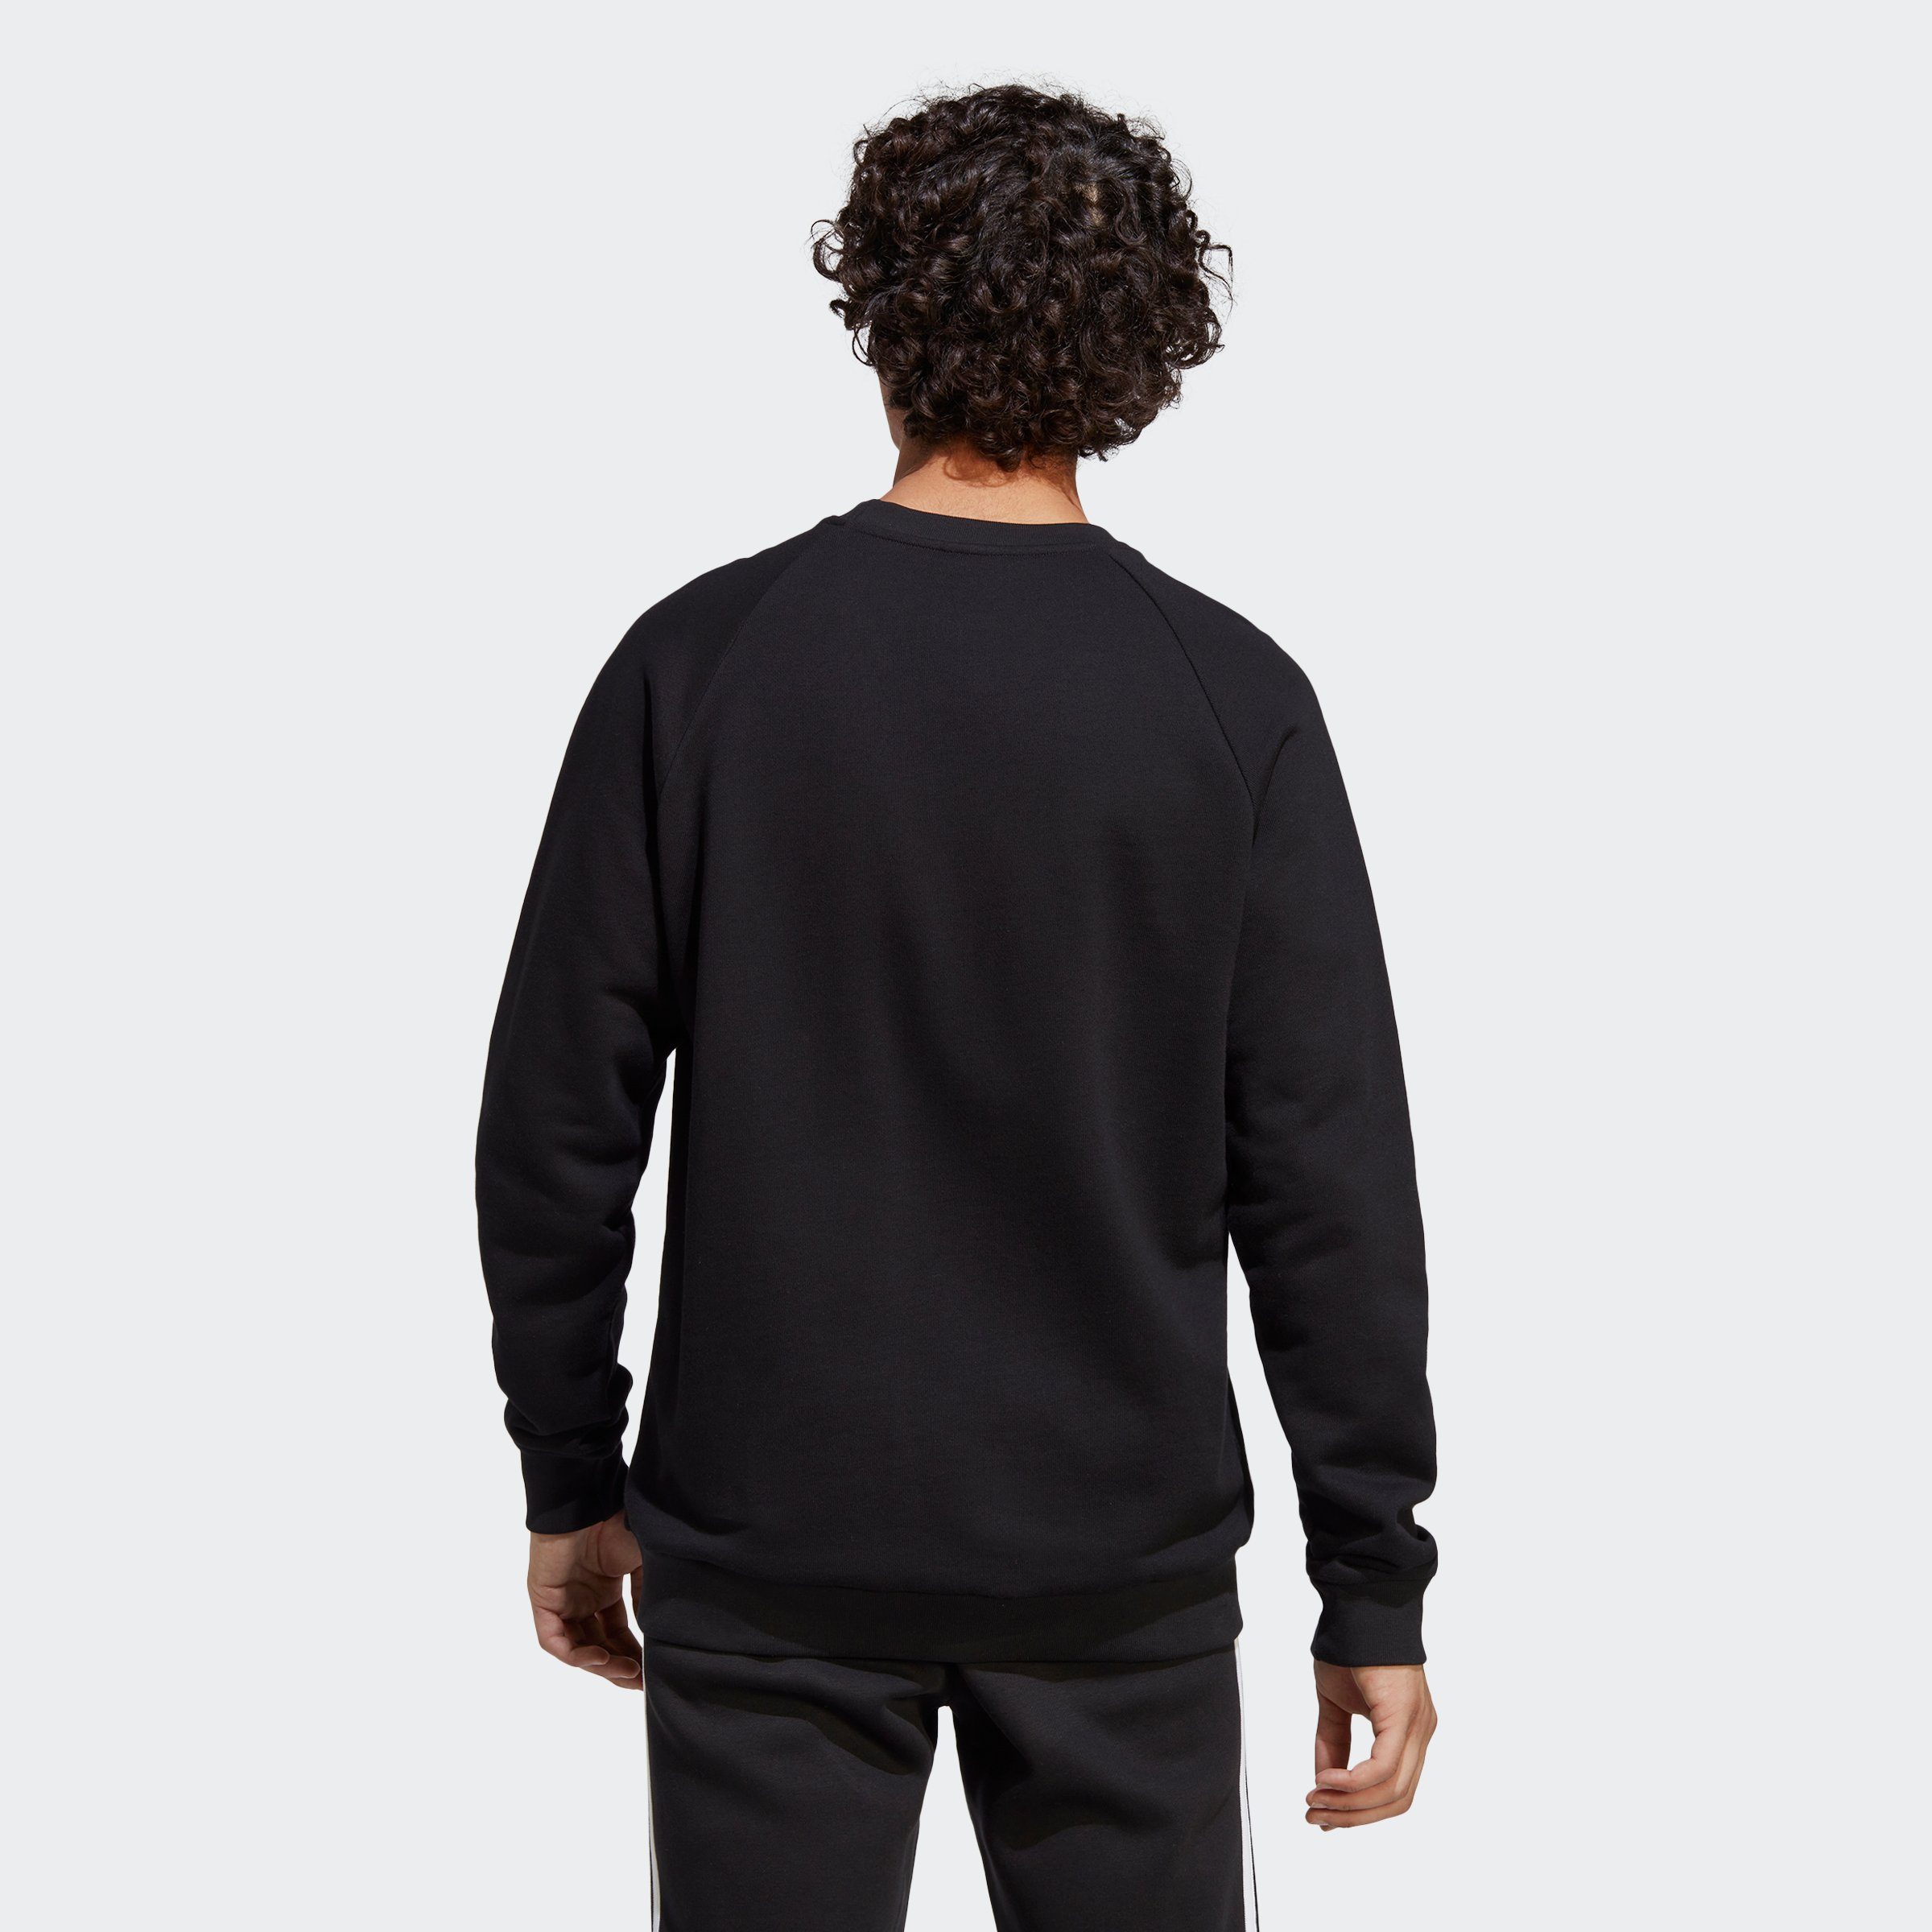 CLASSICS Black Sweatshirt Originals ADICOLOR TREFOIL adidas